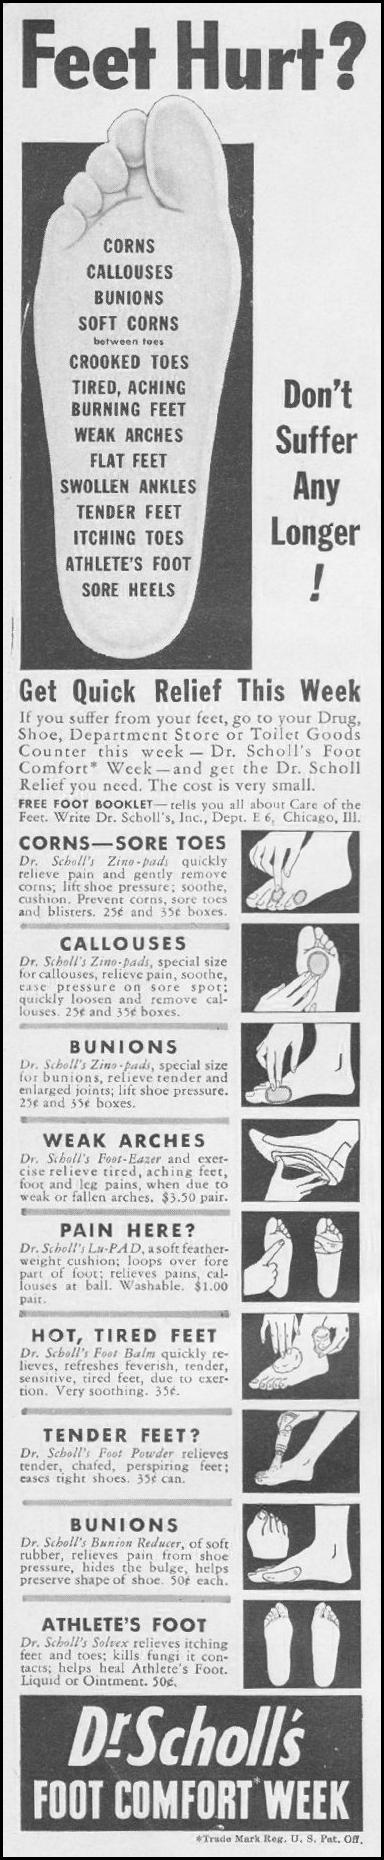 DR. SCHOLL'S FOOT COMFORT WEEK
LIFE
06/22/1942
p. 84